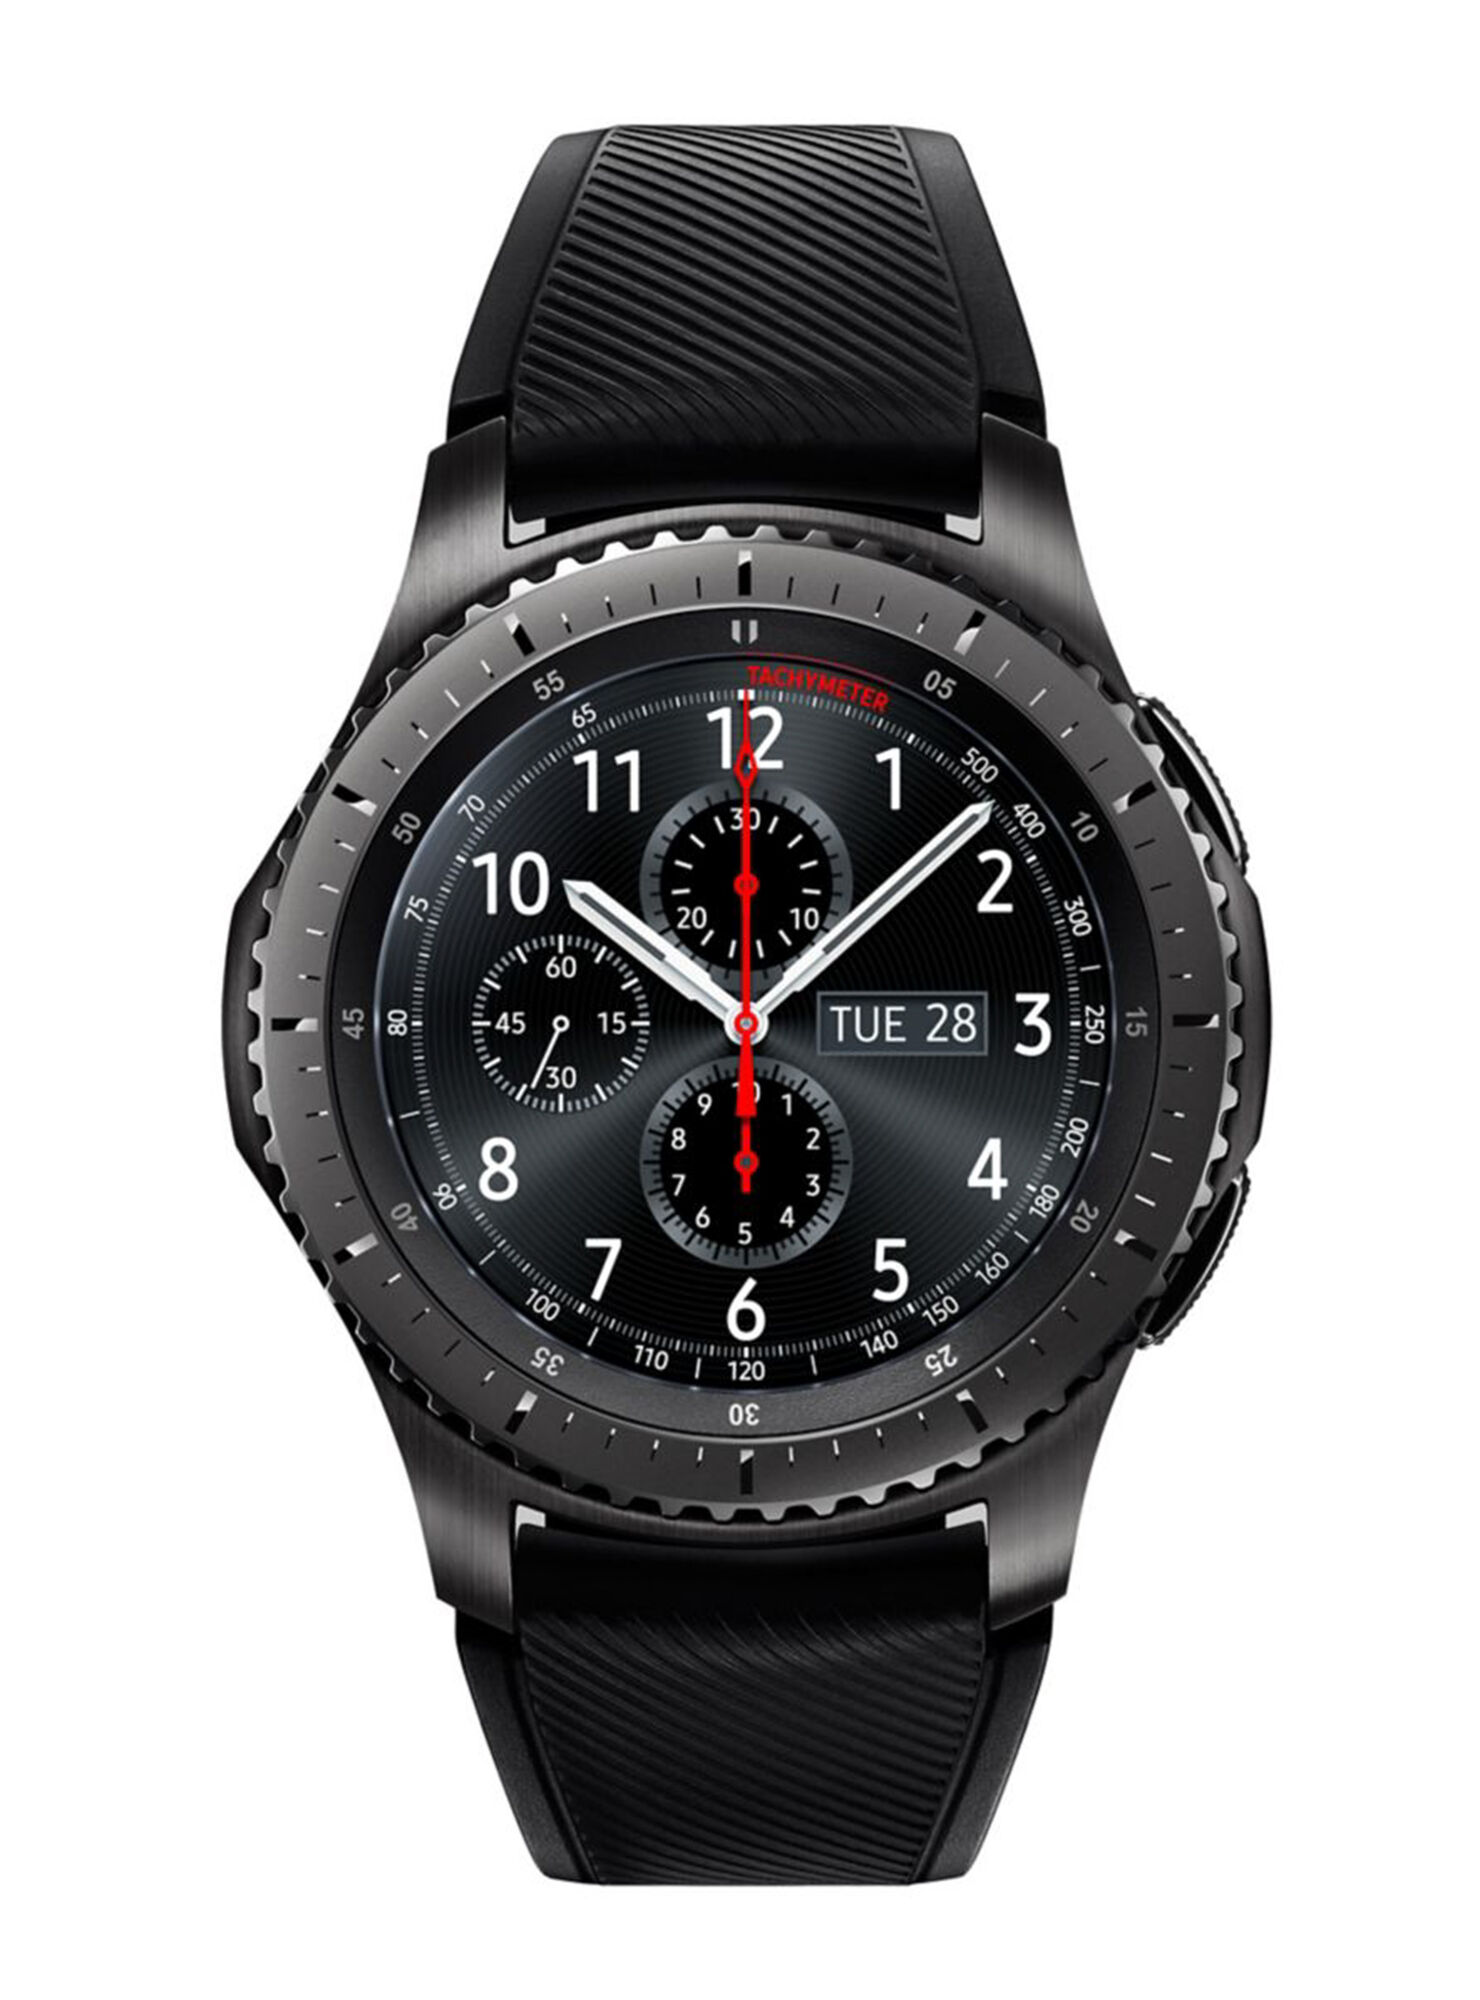 águila camino en frente de Smartwatch Samsung Gear S3 Frontier - Smartwatches | Paris.cl